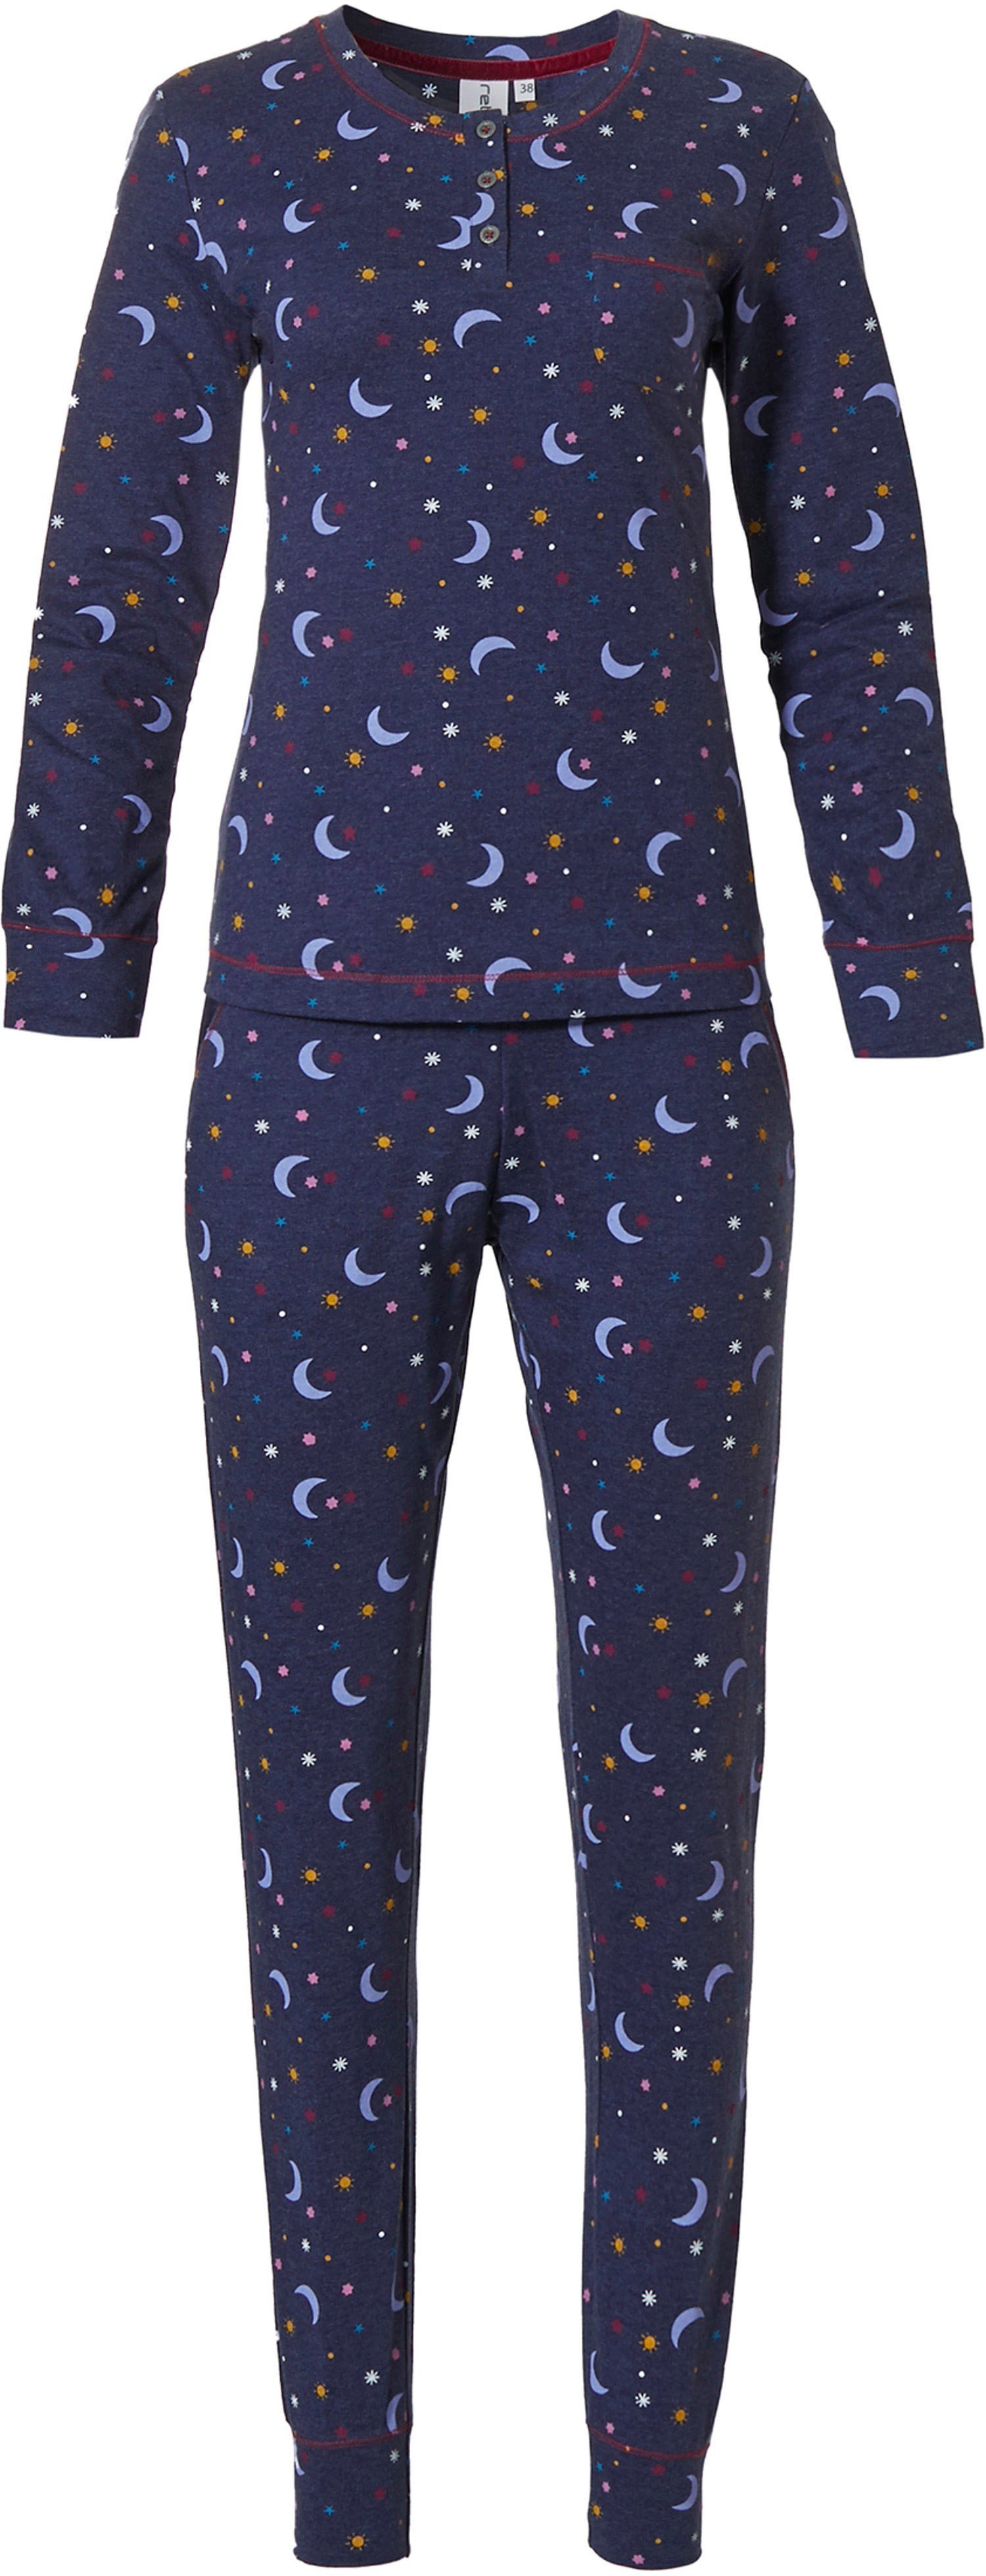 Sonne Rebelle tlg) Damen (2 Rebelle Allover Pyjama Schlafanzug Mond Sterne und